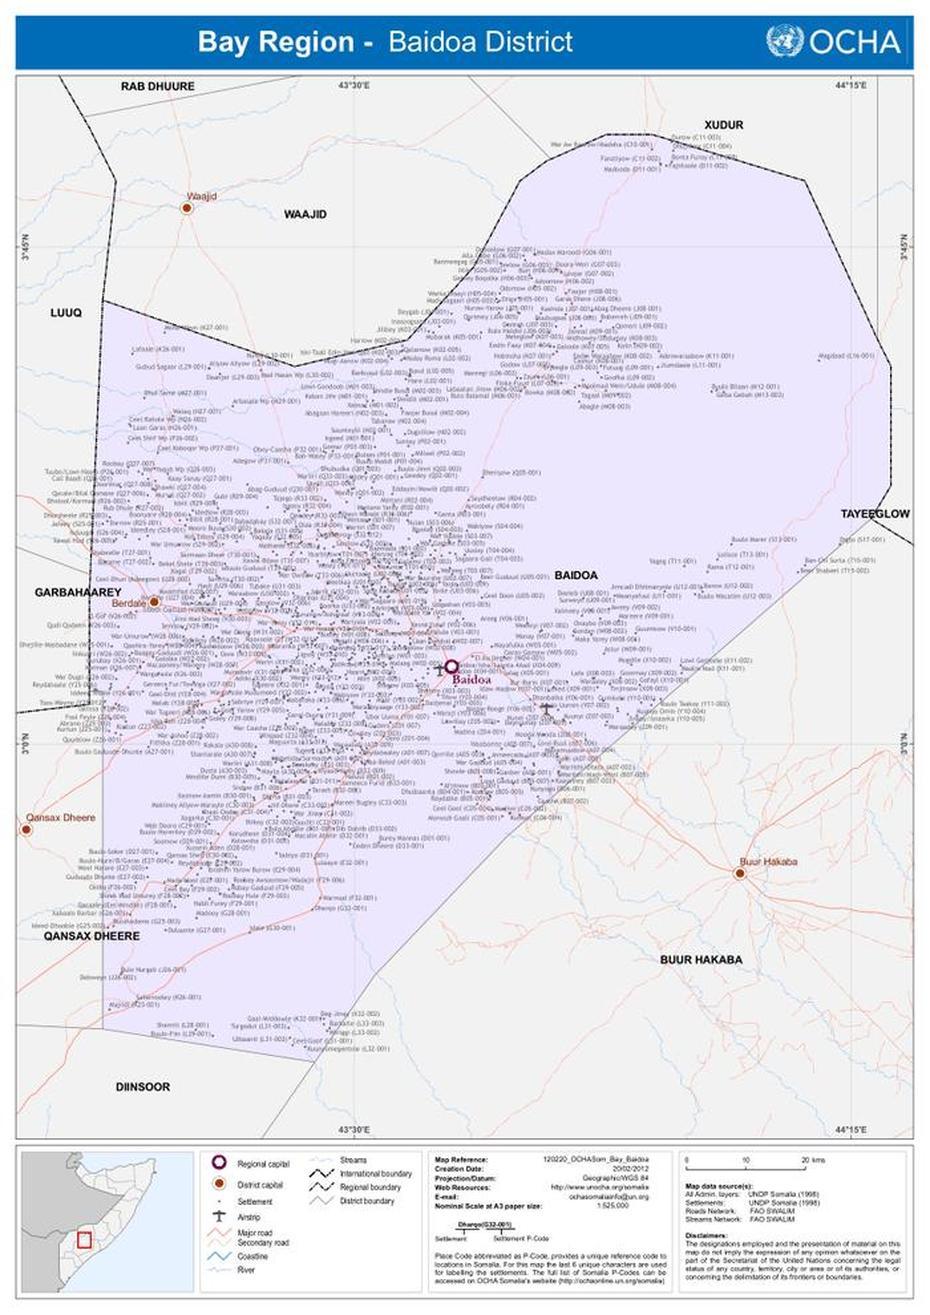 Kismayo Somalia, Baledogle Somalia, Baidoa District, Baidoa, Somalia